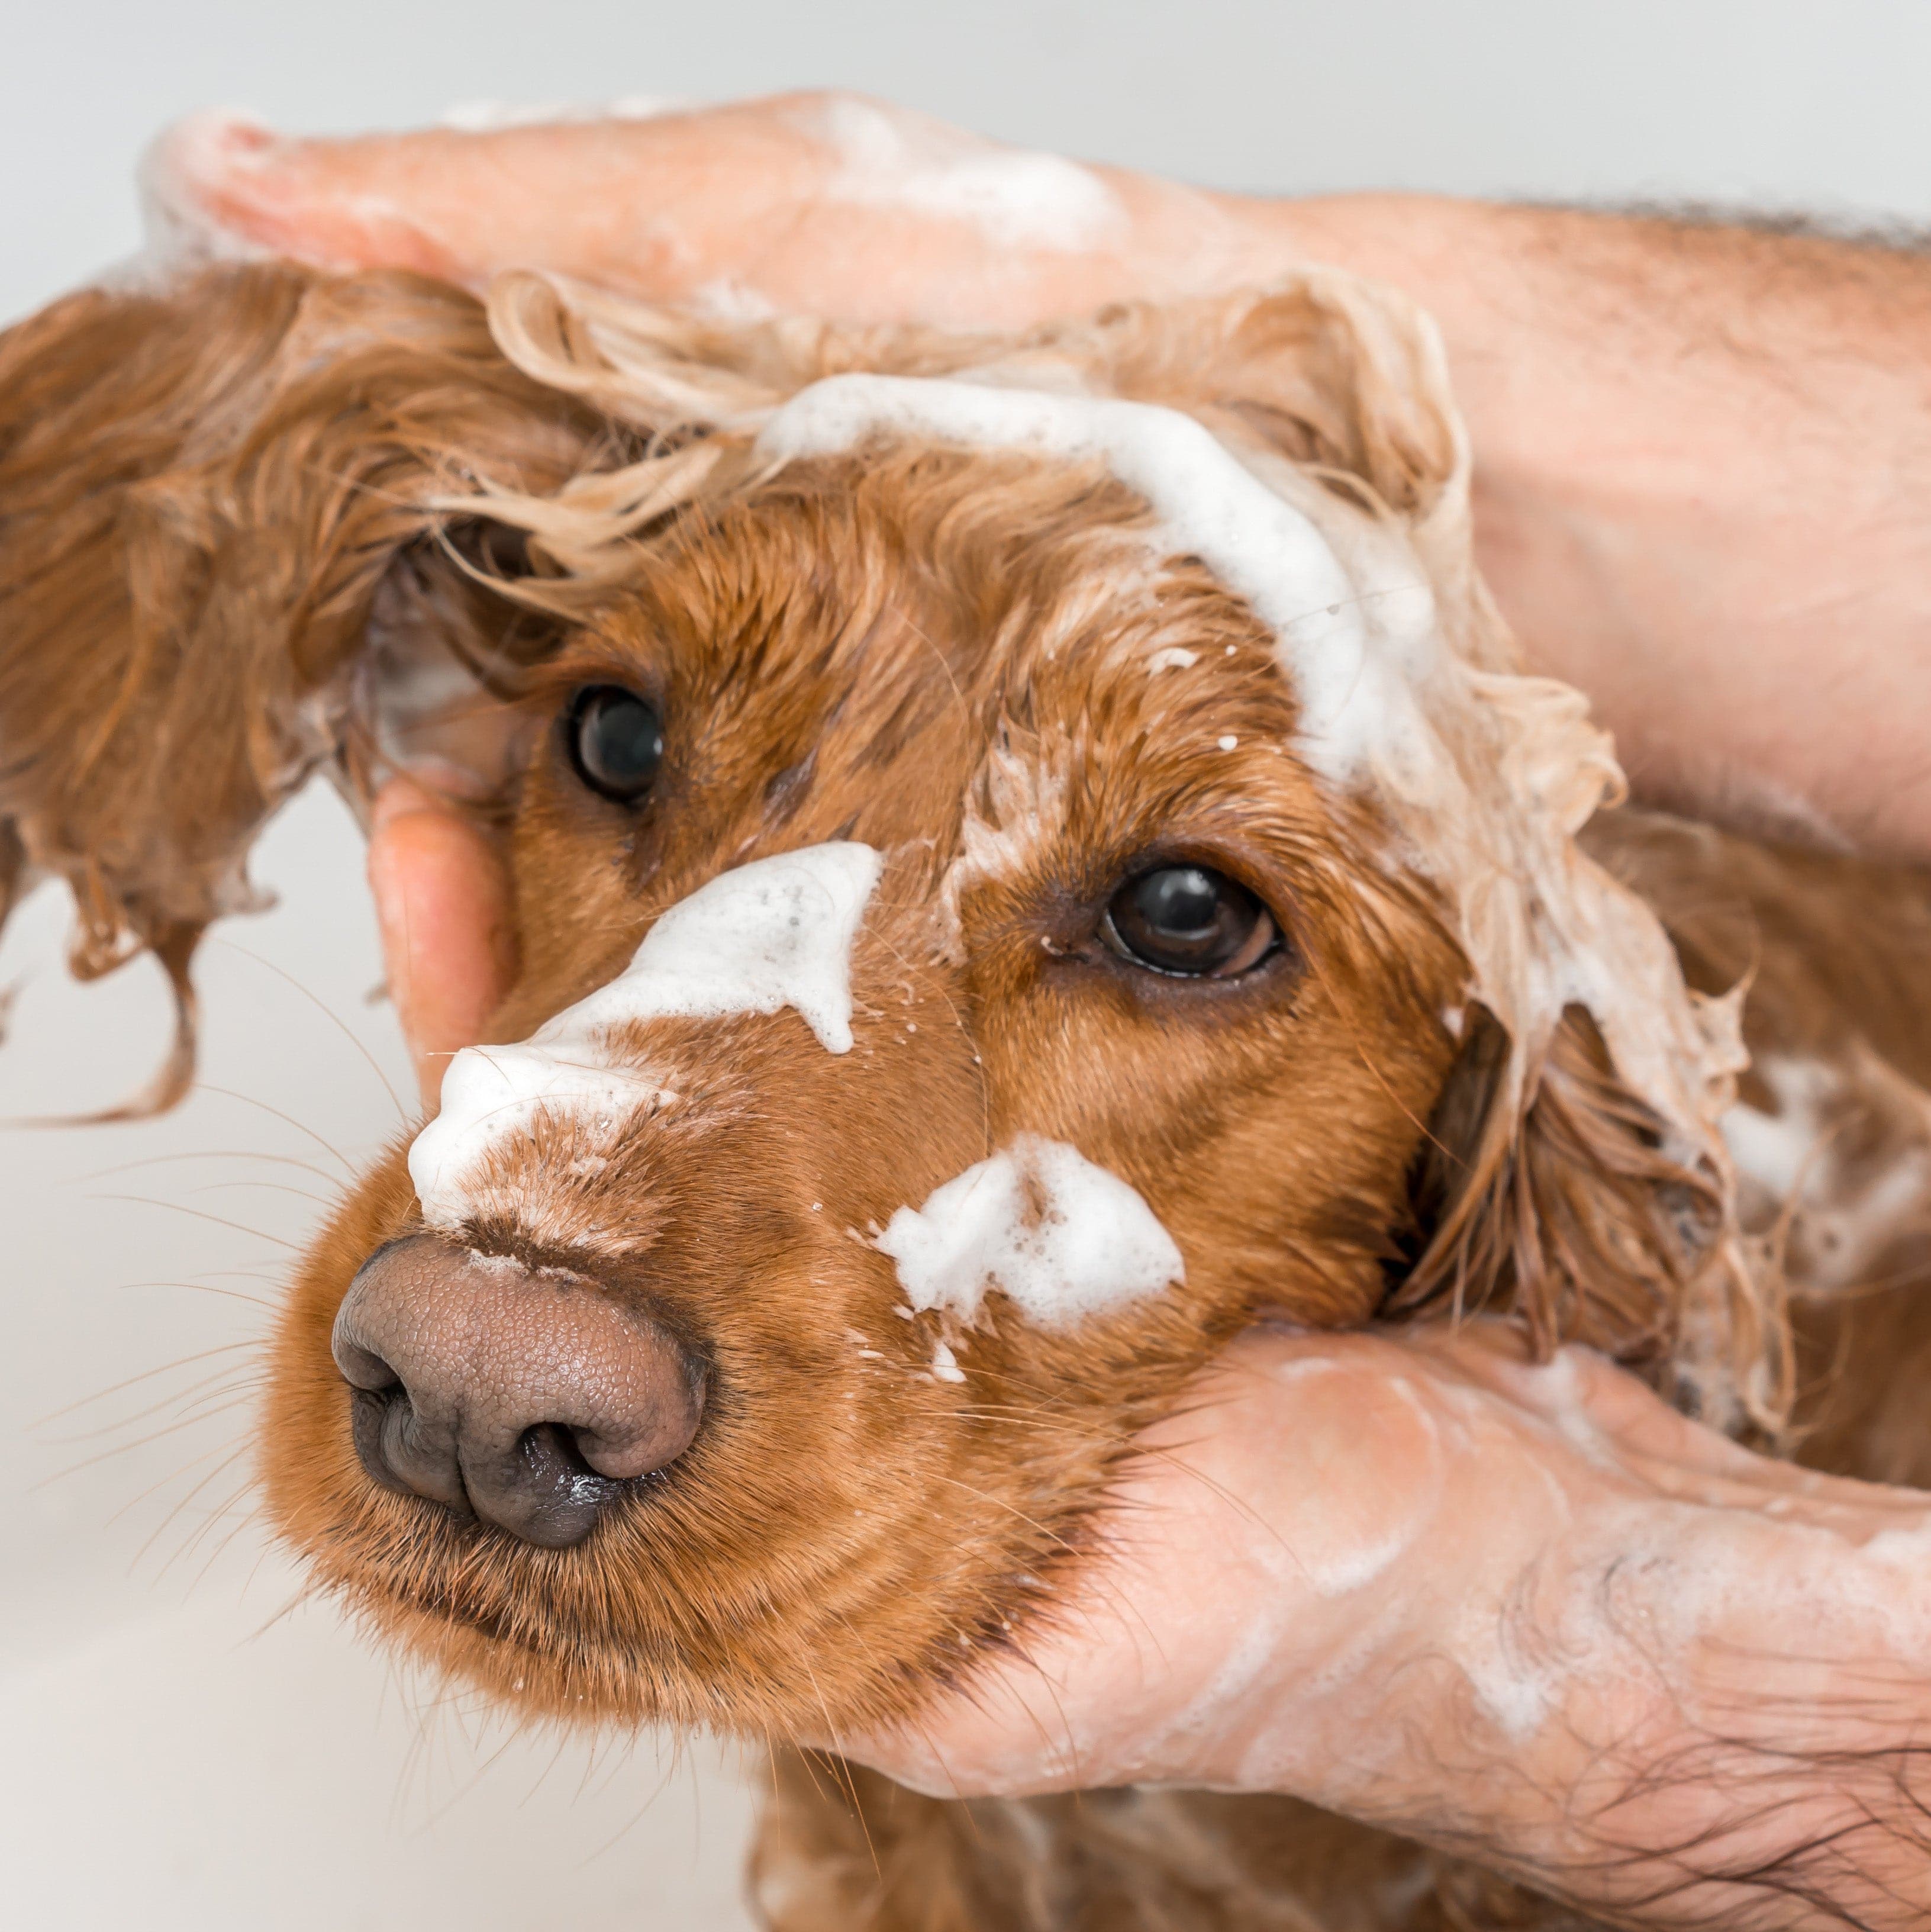 Pet grooming & hygiene